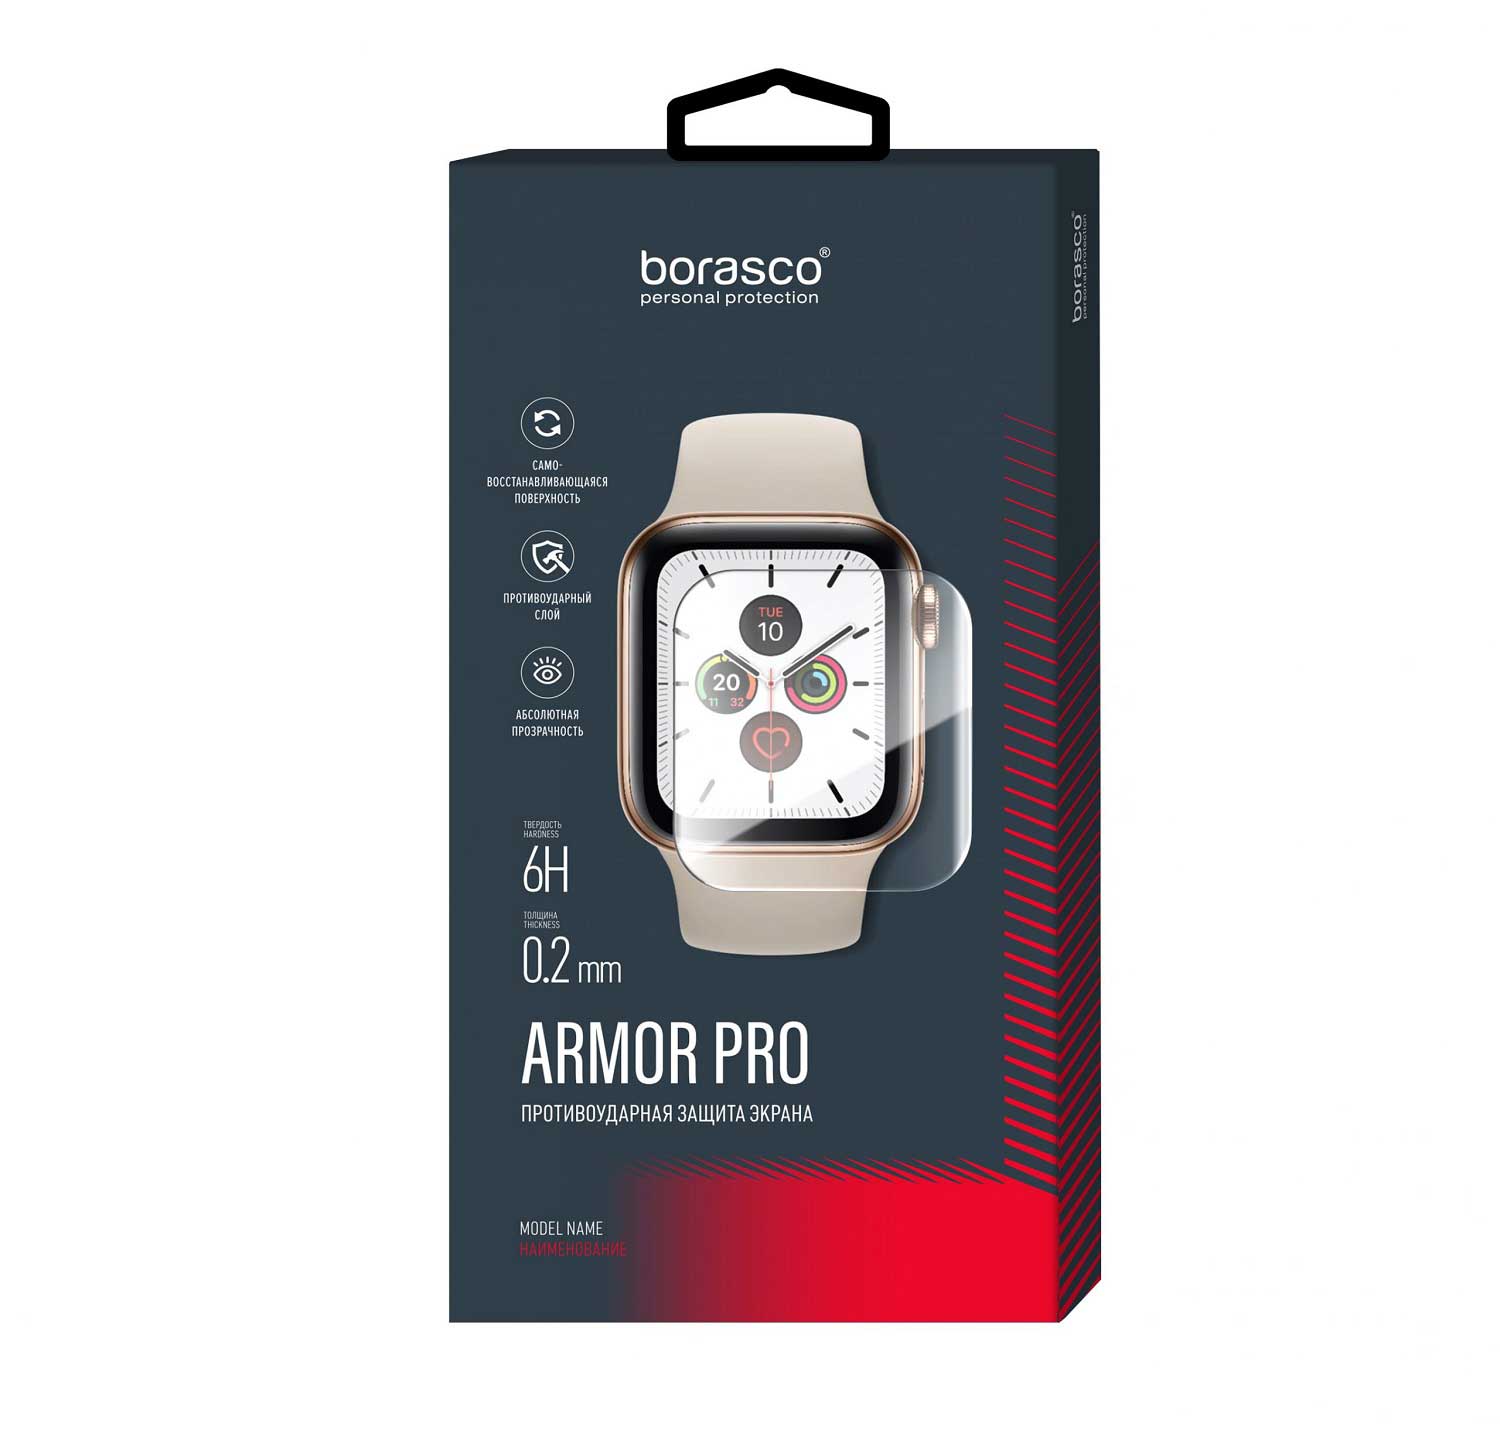 Защита экрана BoraSCO Armor Pro для Xiaomi Mi Band 2 матовый защита экрана borasco armor pro для honor band 6 матовый